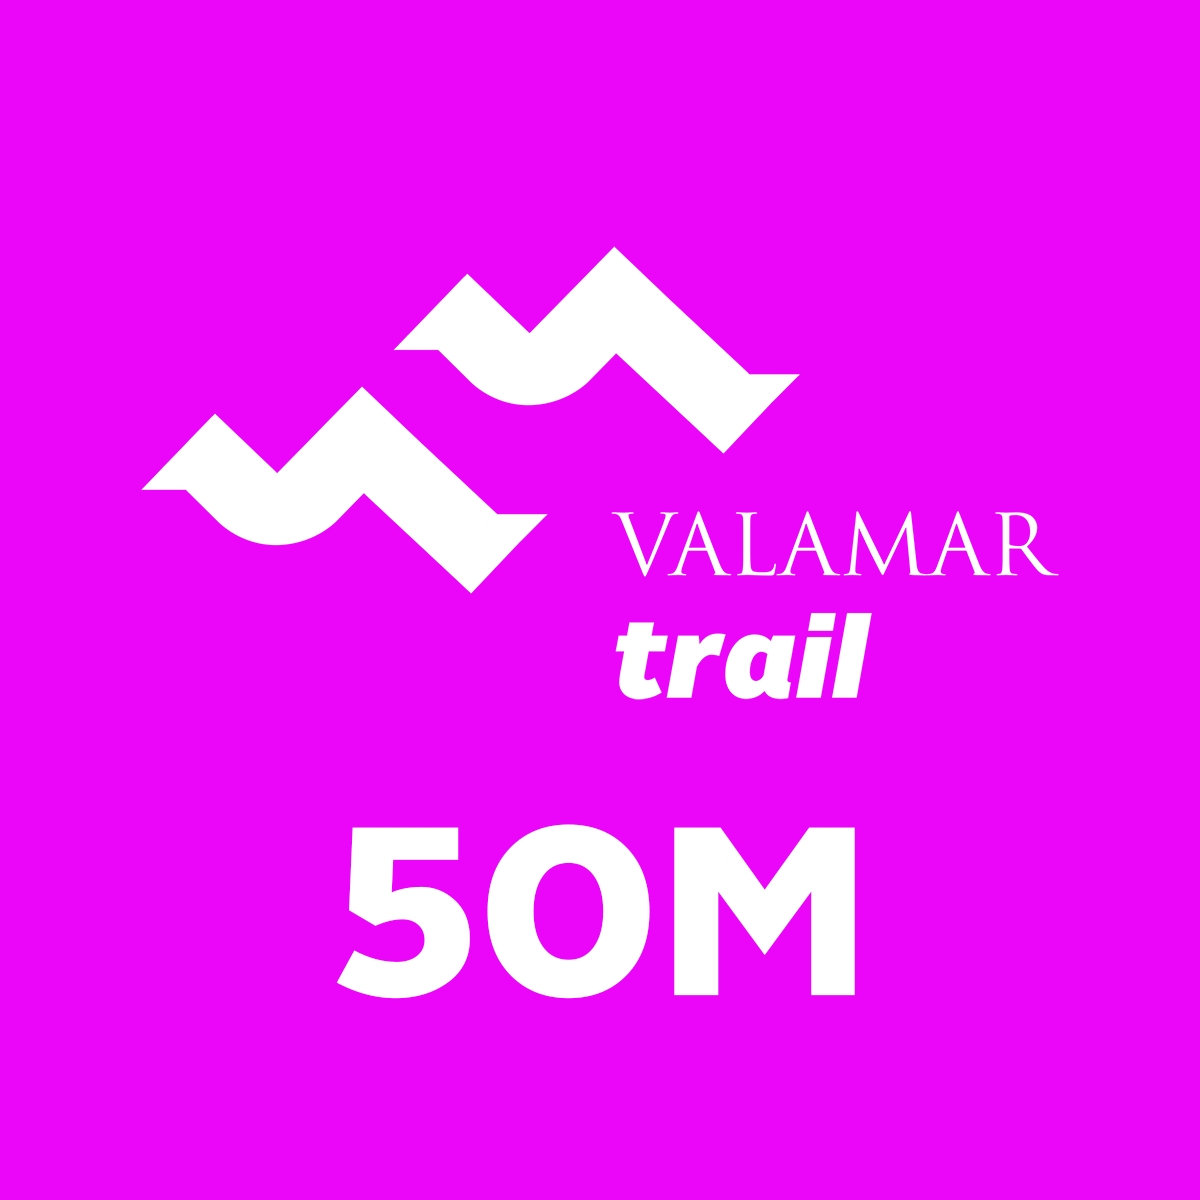 VALAMAR TRAIL: 50M - Register